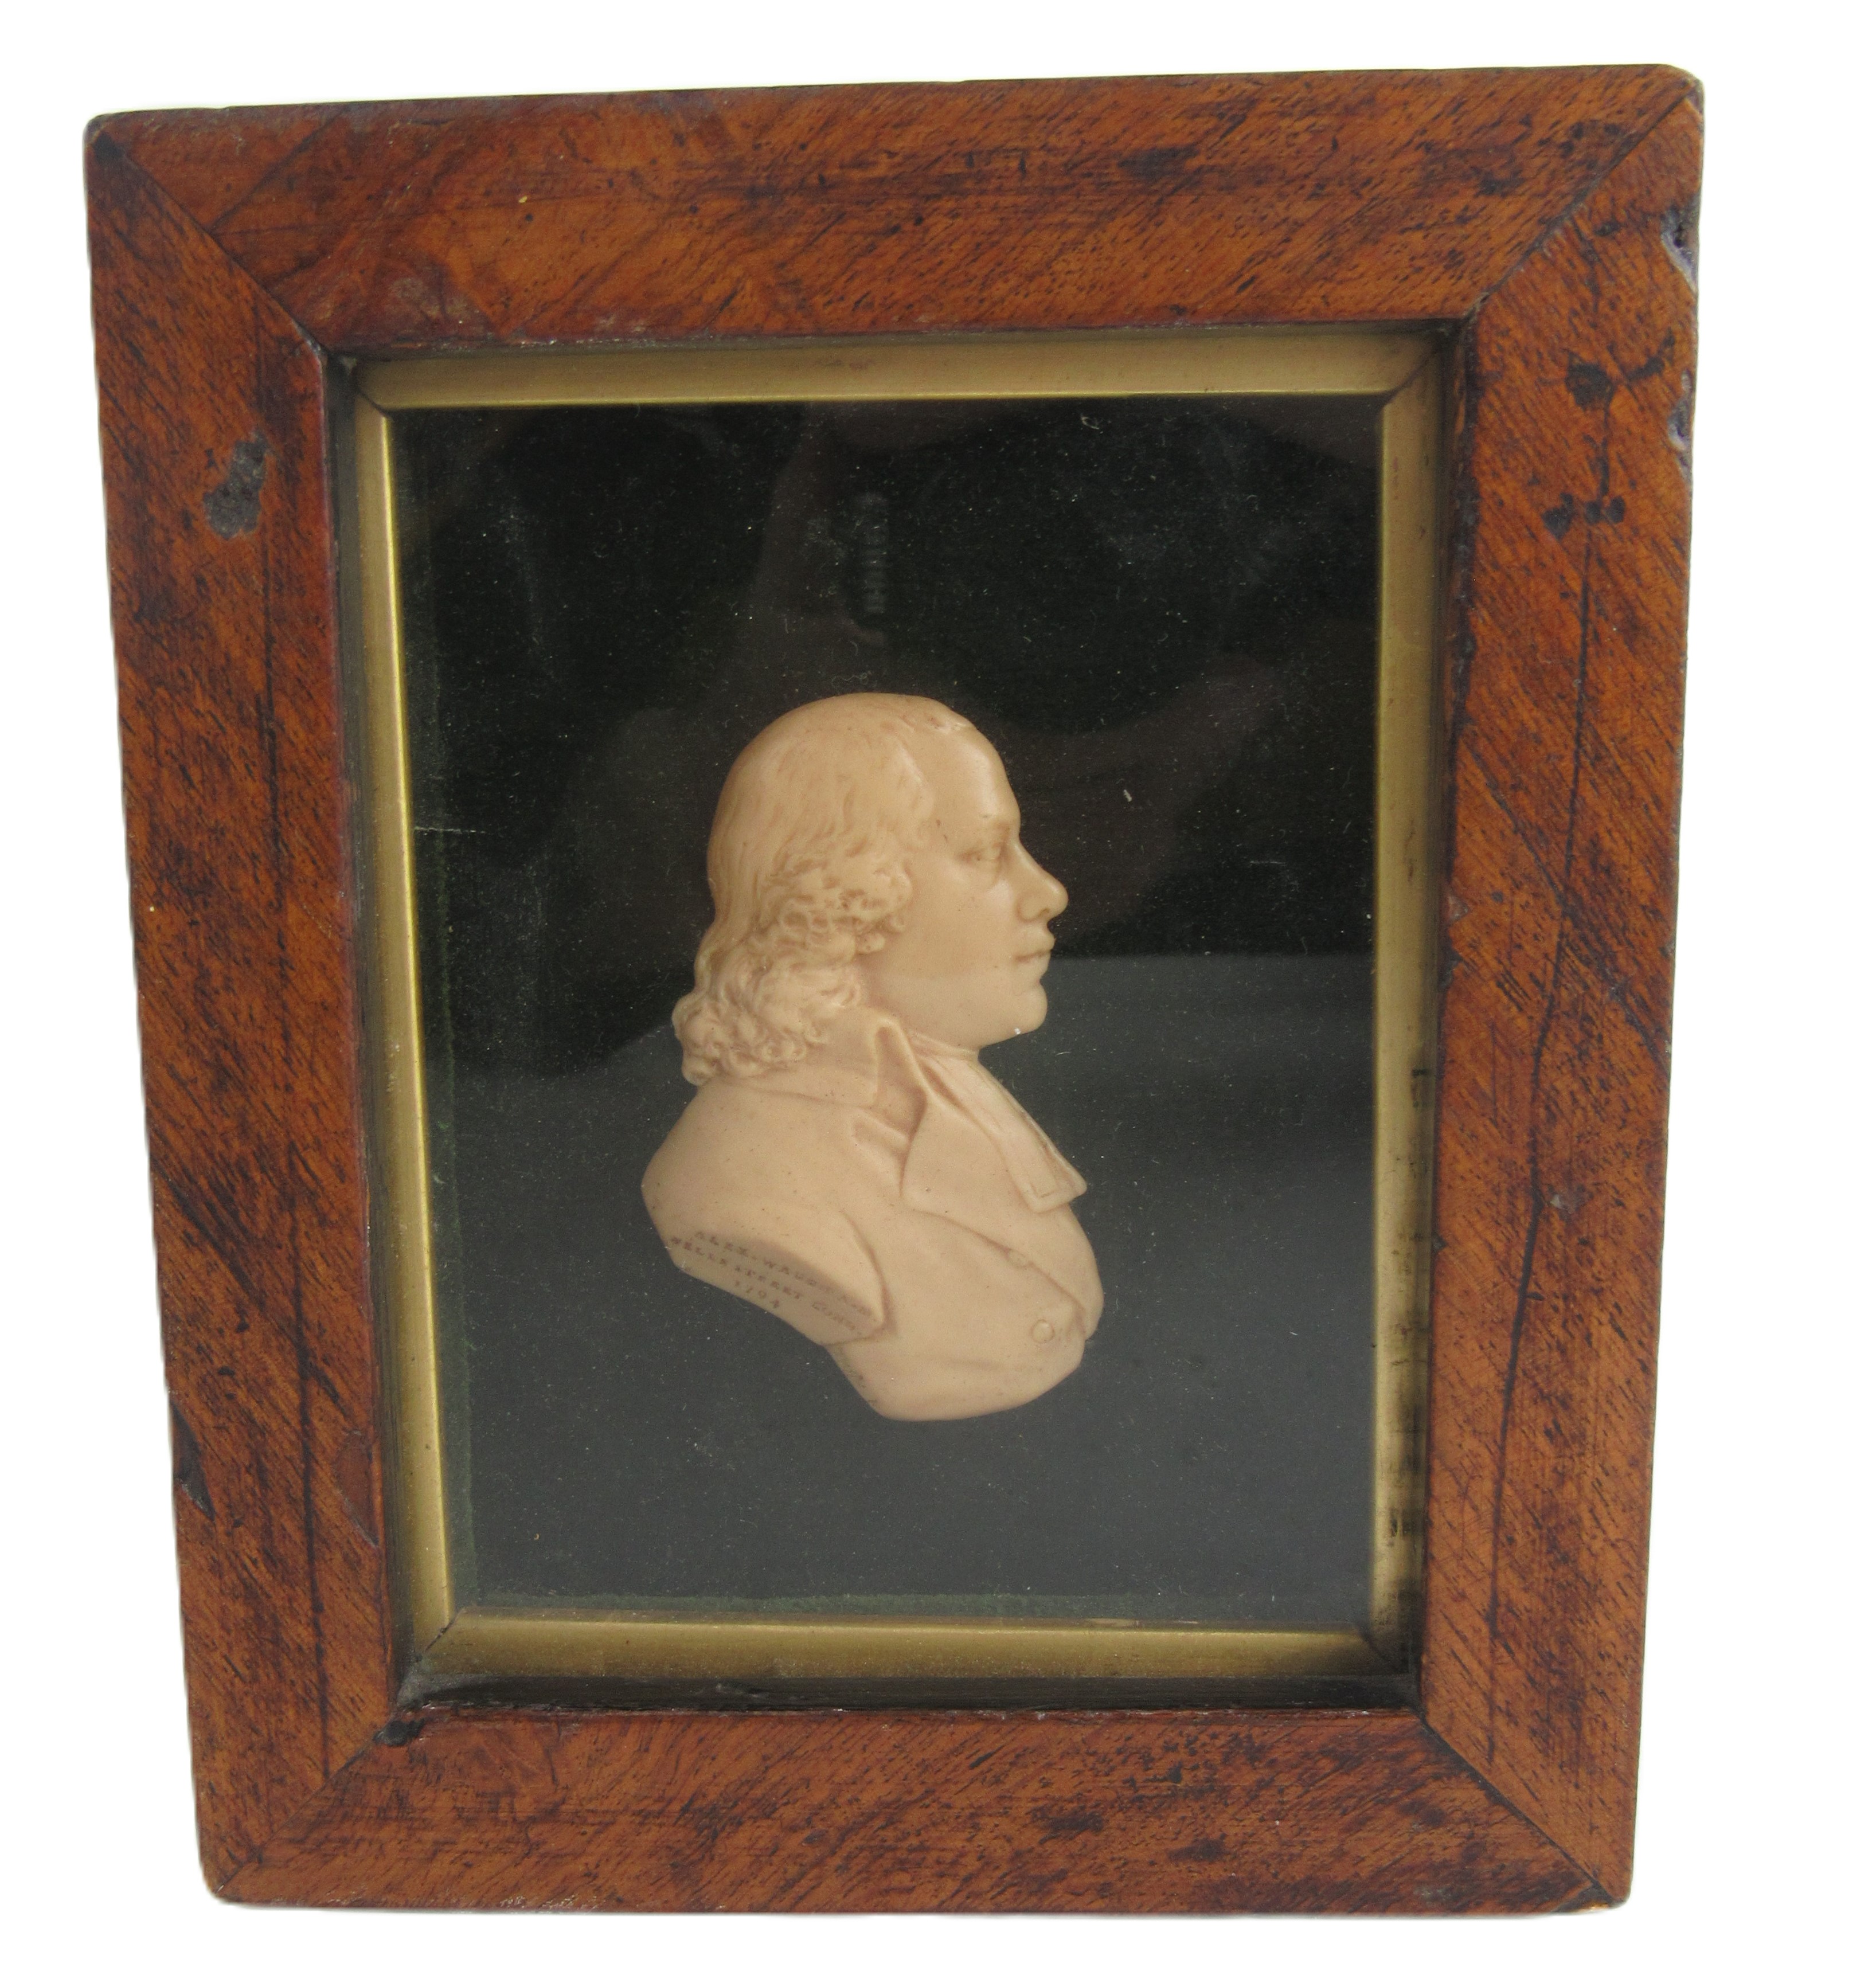 James Tassie, Scottish (1735-1799) "Reverend Alexander Waugh," wax portrait relief, mounted on green